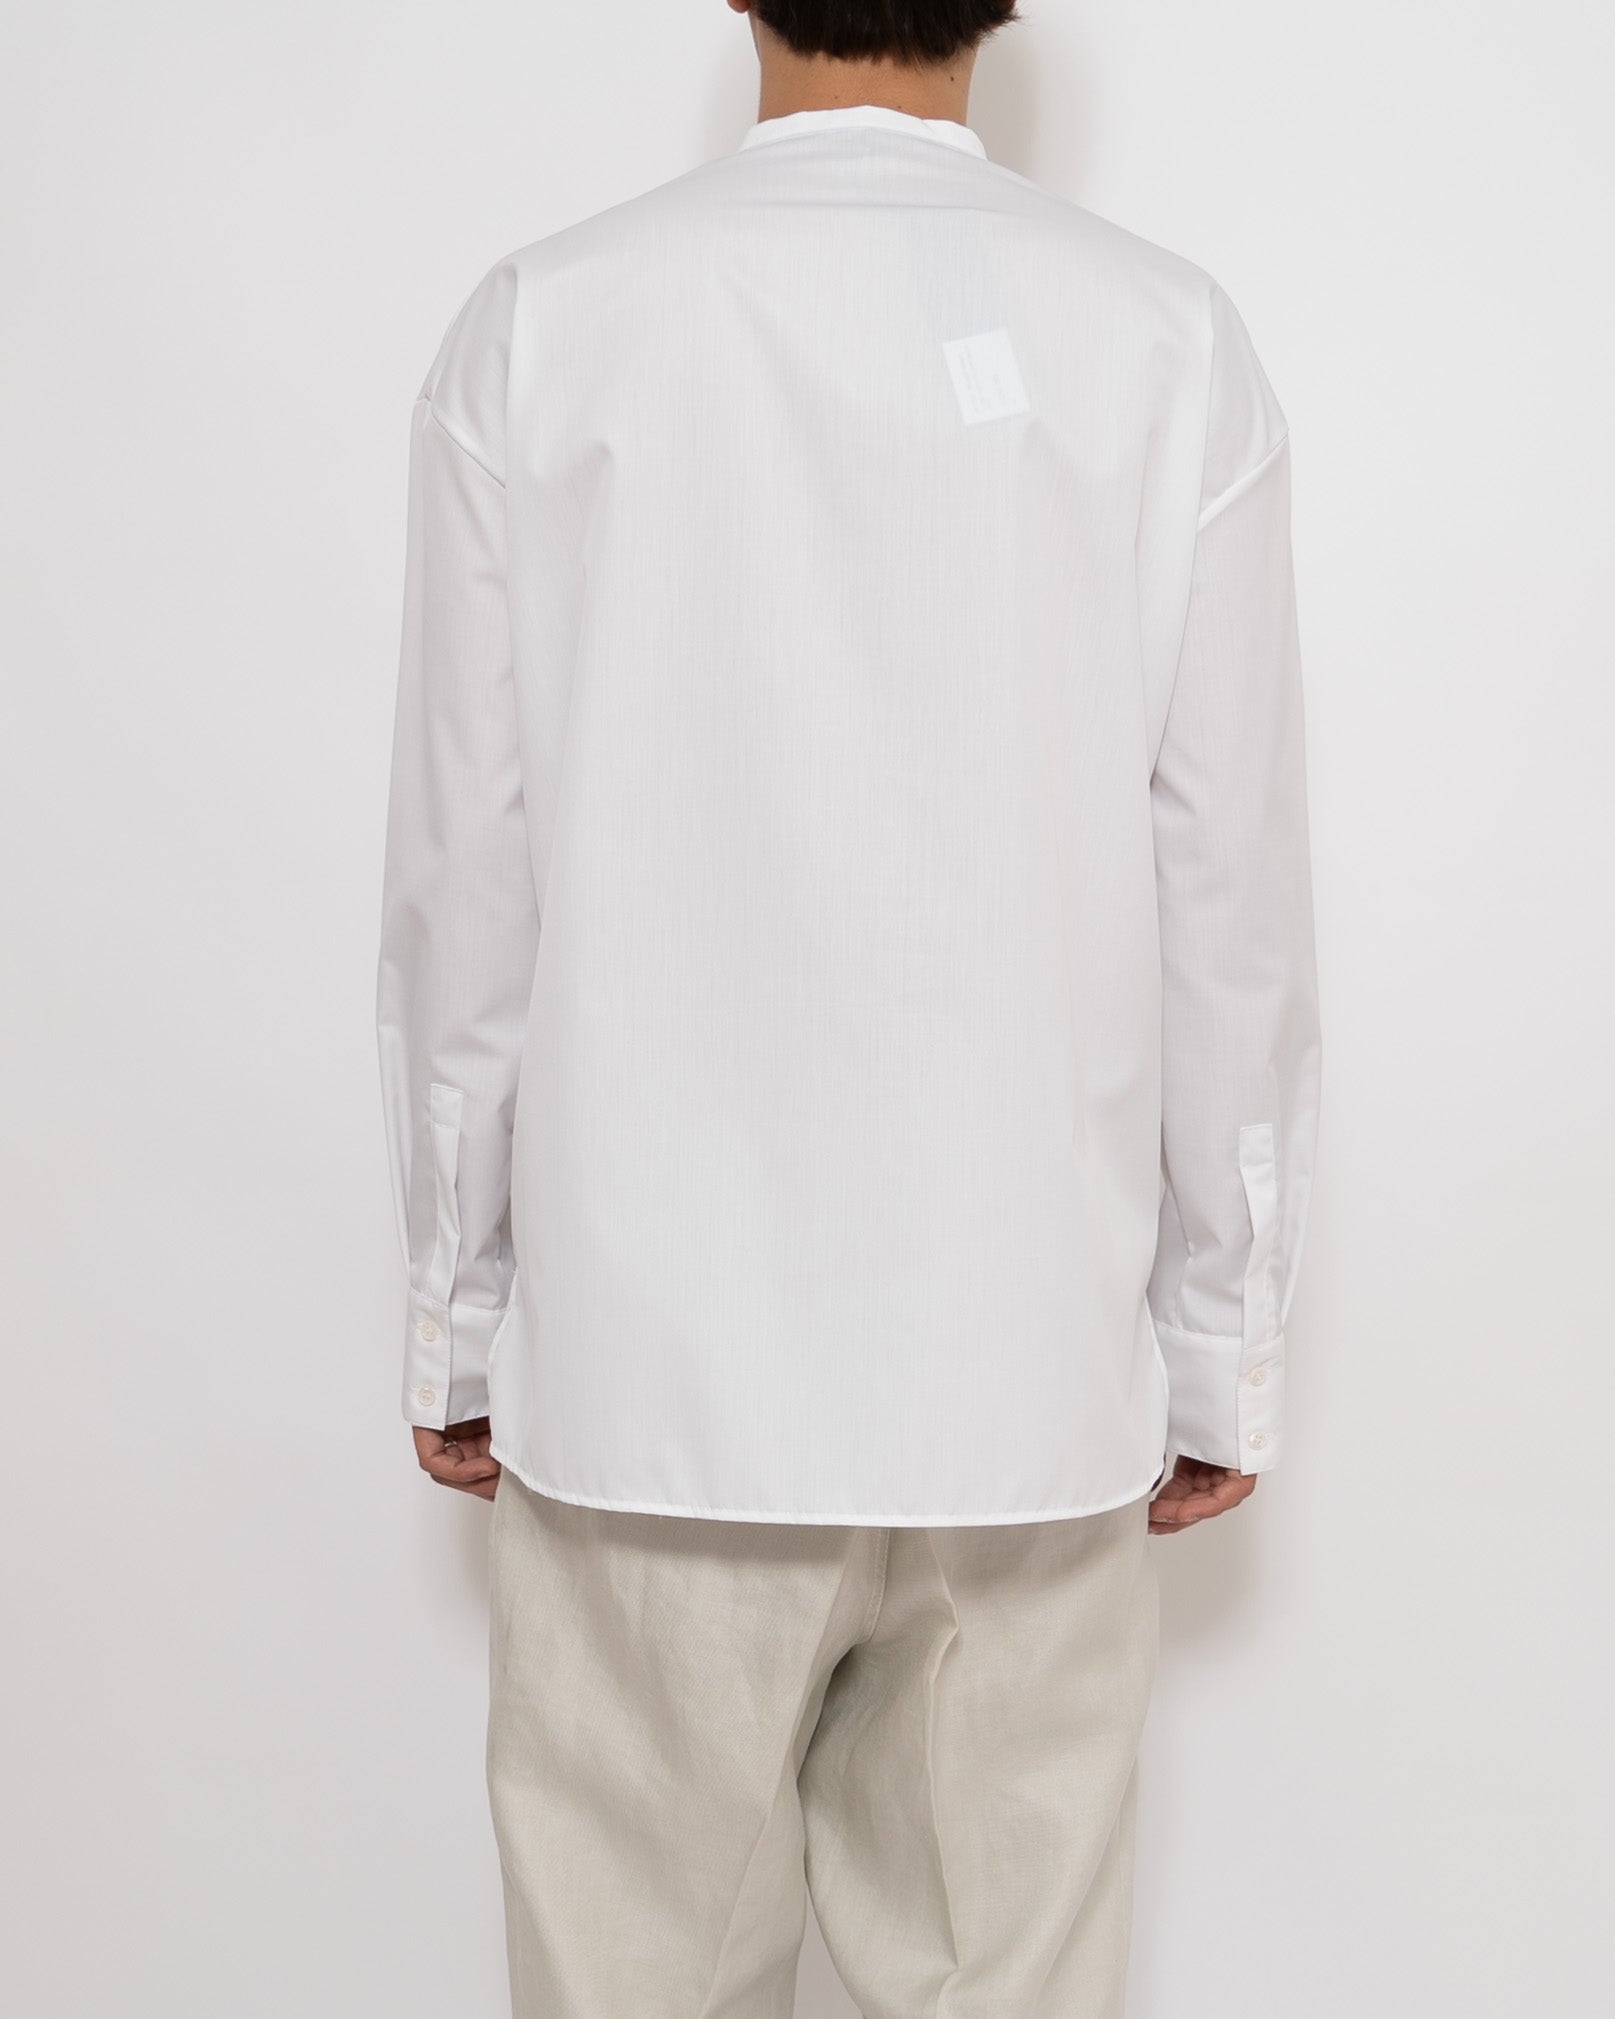 FW20 Oversized Baron White Shirt